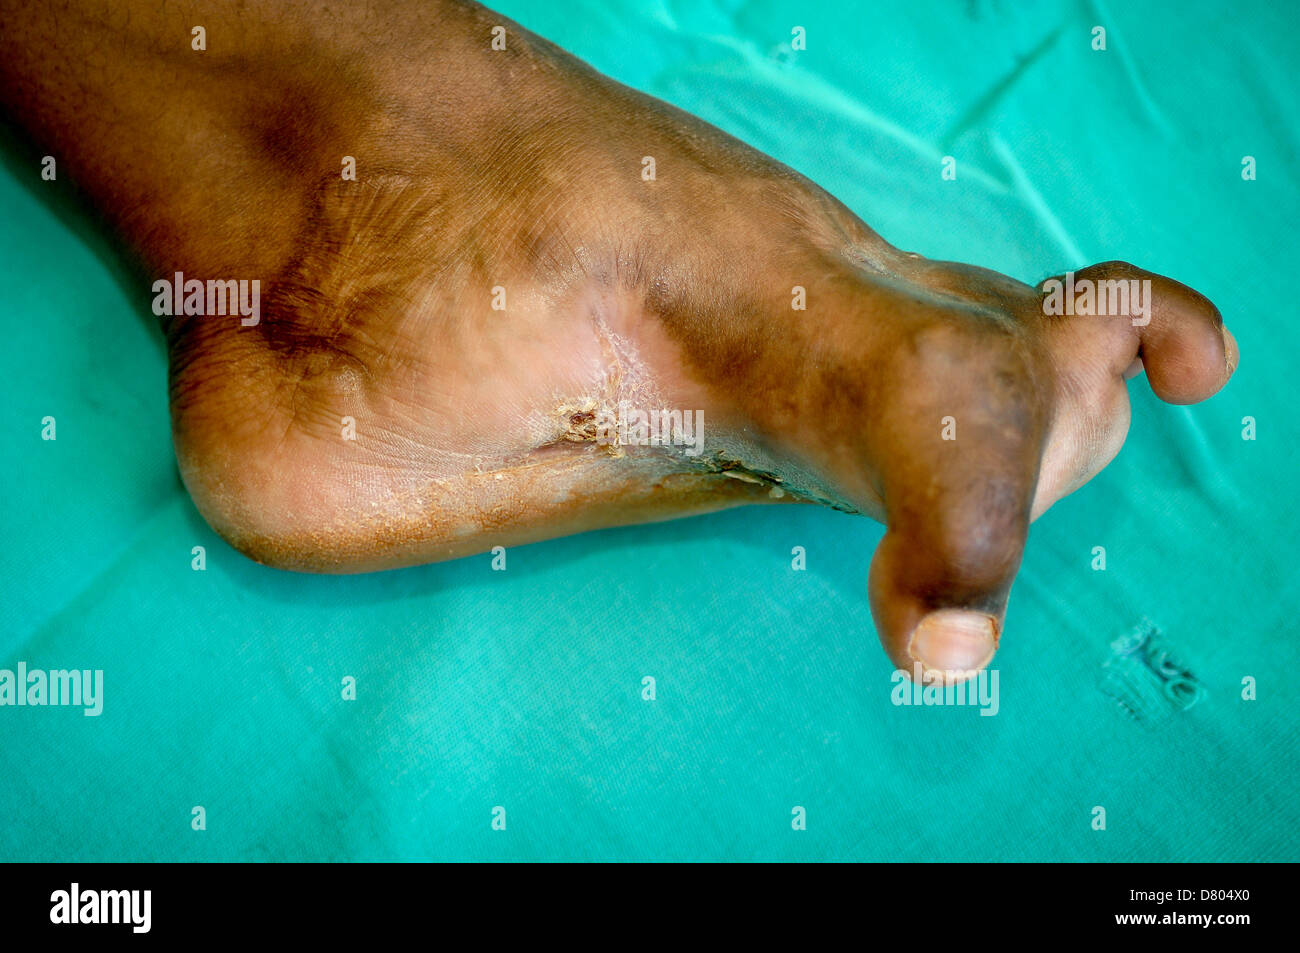 Mycetoma interessa il piede di un uomo giovane. Il mycetoma inoltre ha causato una grave deformazione delle dita. Foto Stock